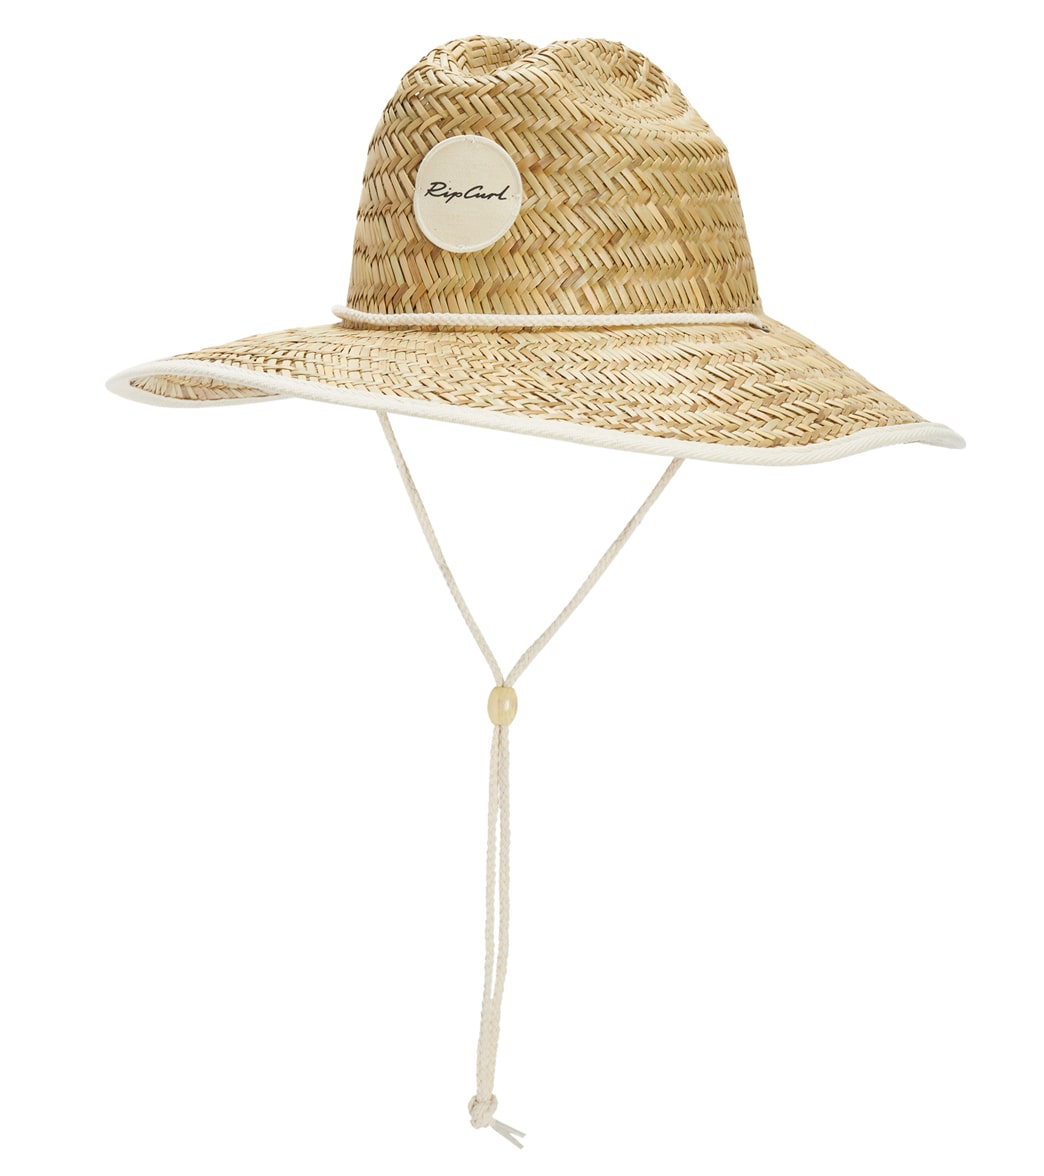 Rip Curl Women's Script Straw Sun Hat - Natural/Black Small - Swimoutlet.com